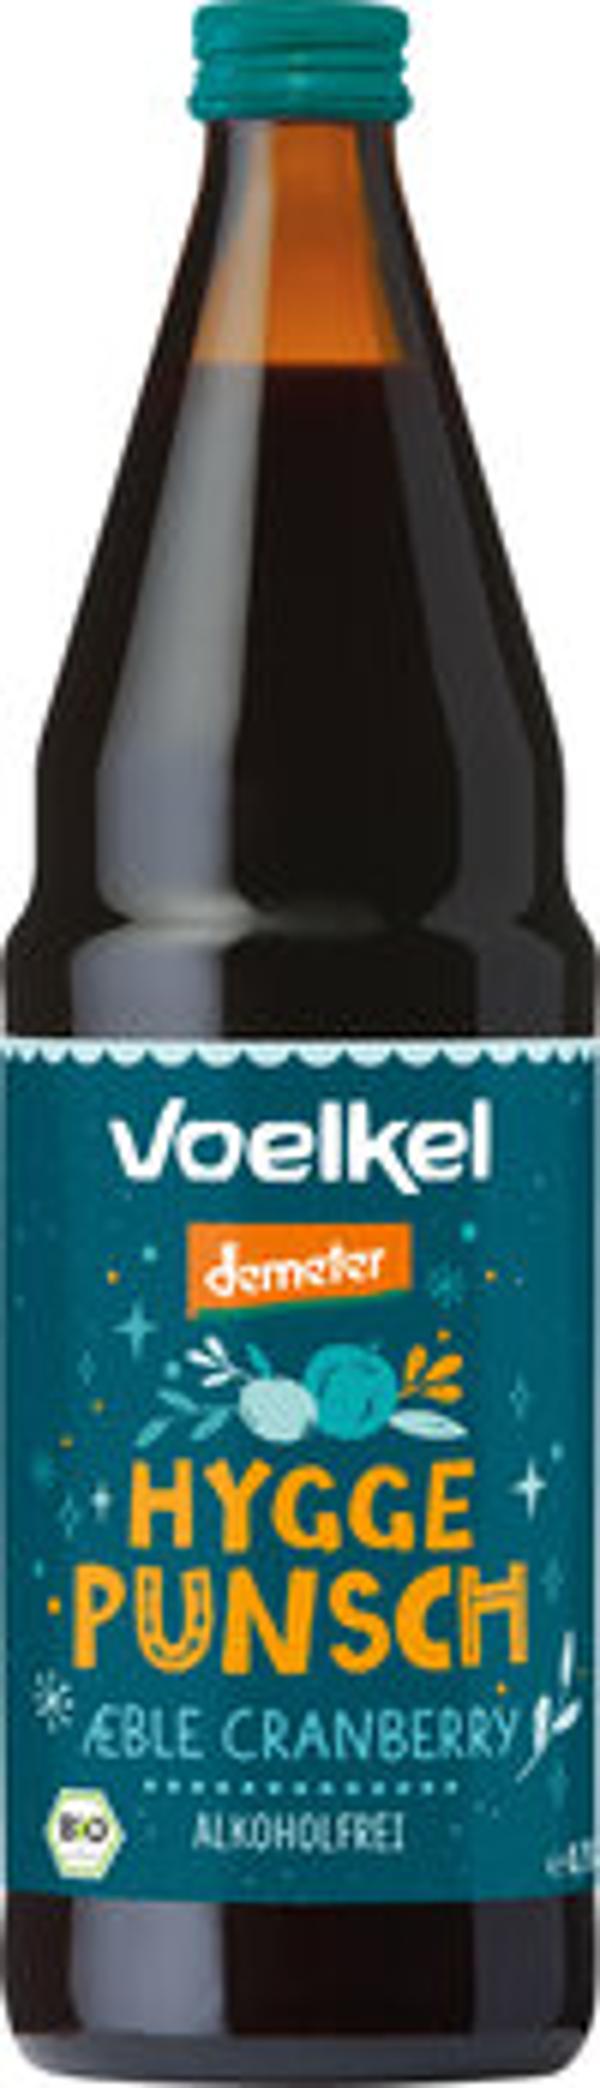 Produktfoto zu Voelkel Hygge-Punsch Apfel Cranberry 0,75L